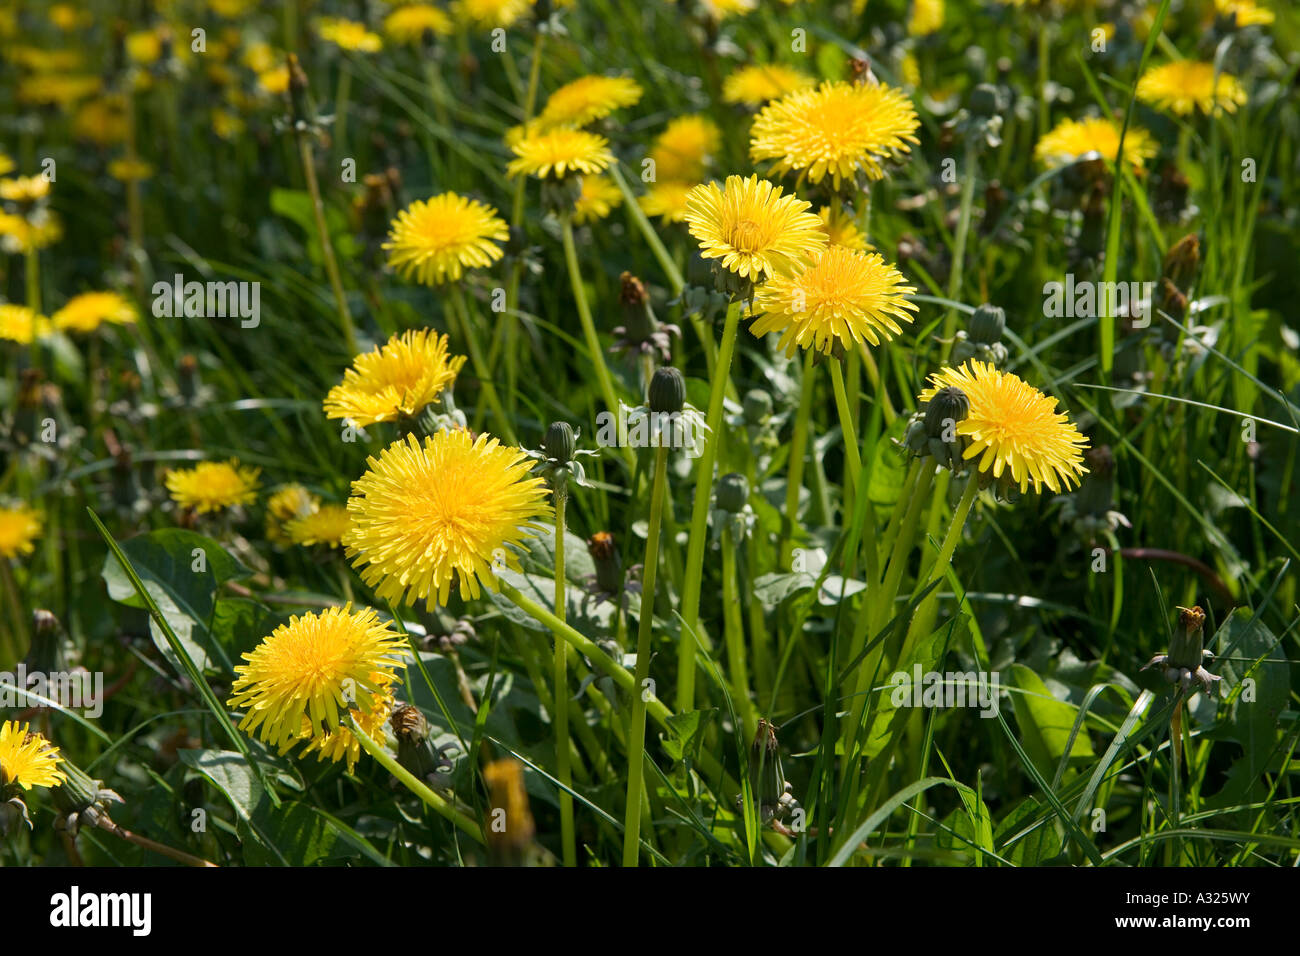 Dandelions, Taraxacum genus of flowering plants in the family Asteraceae, England, UK Stock Photo